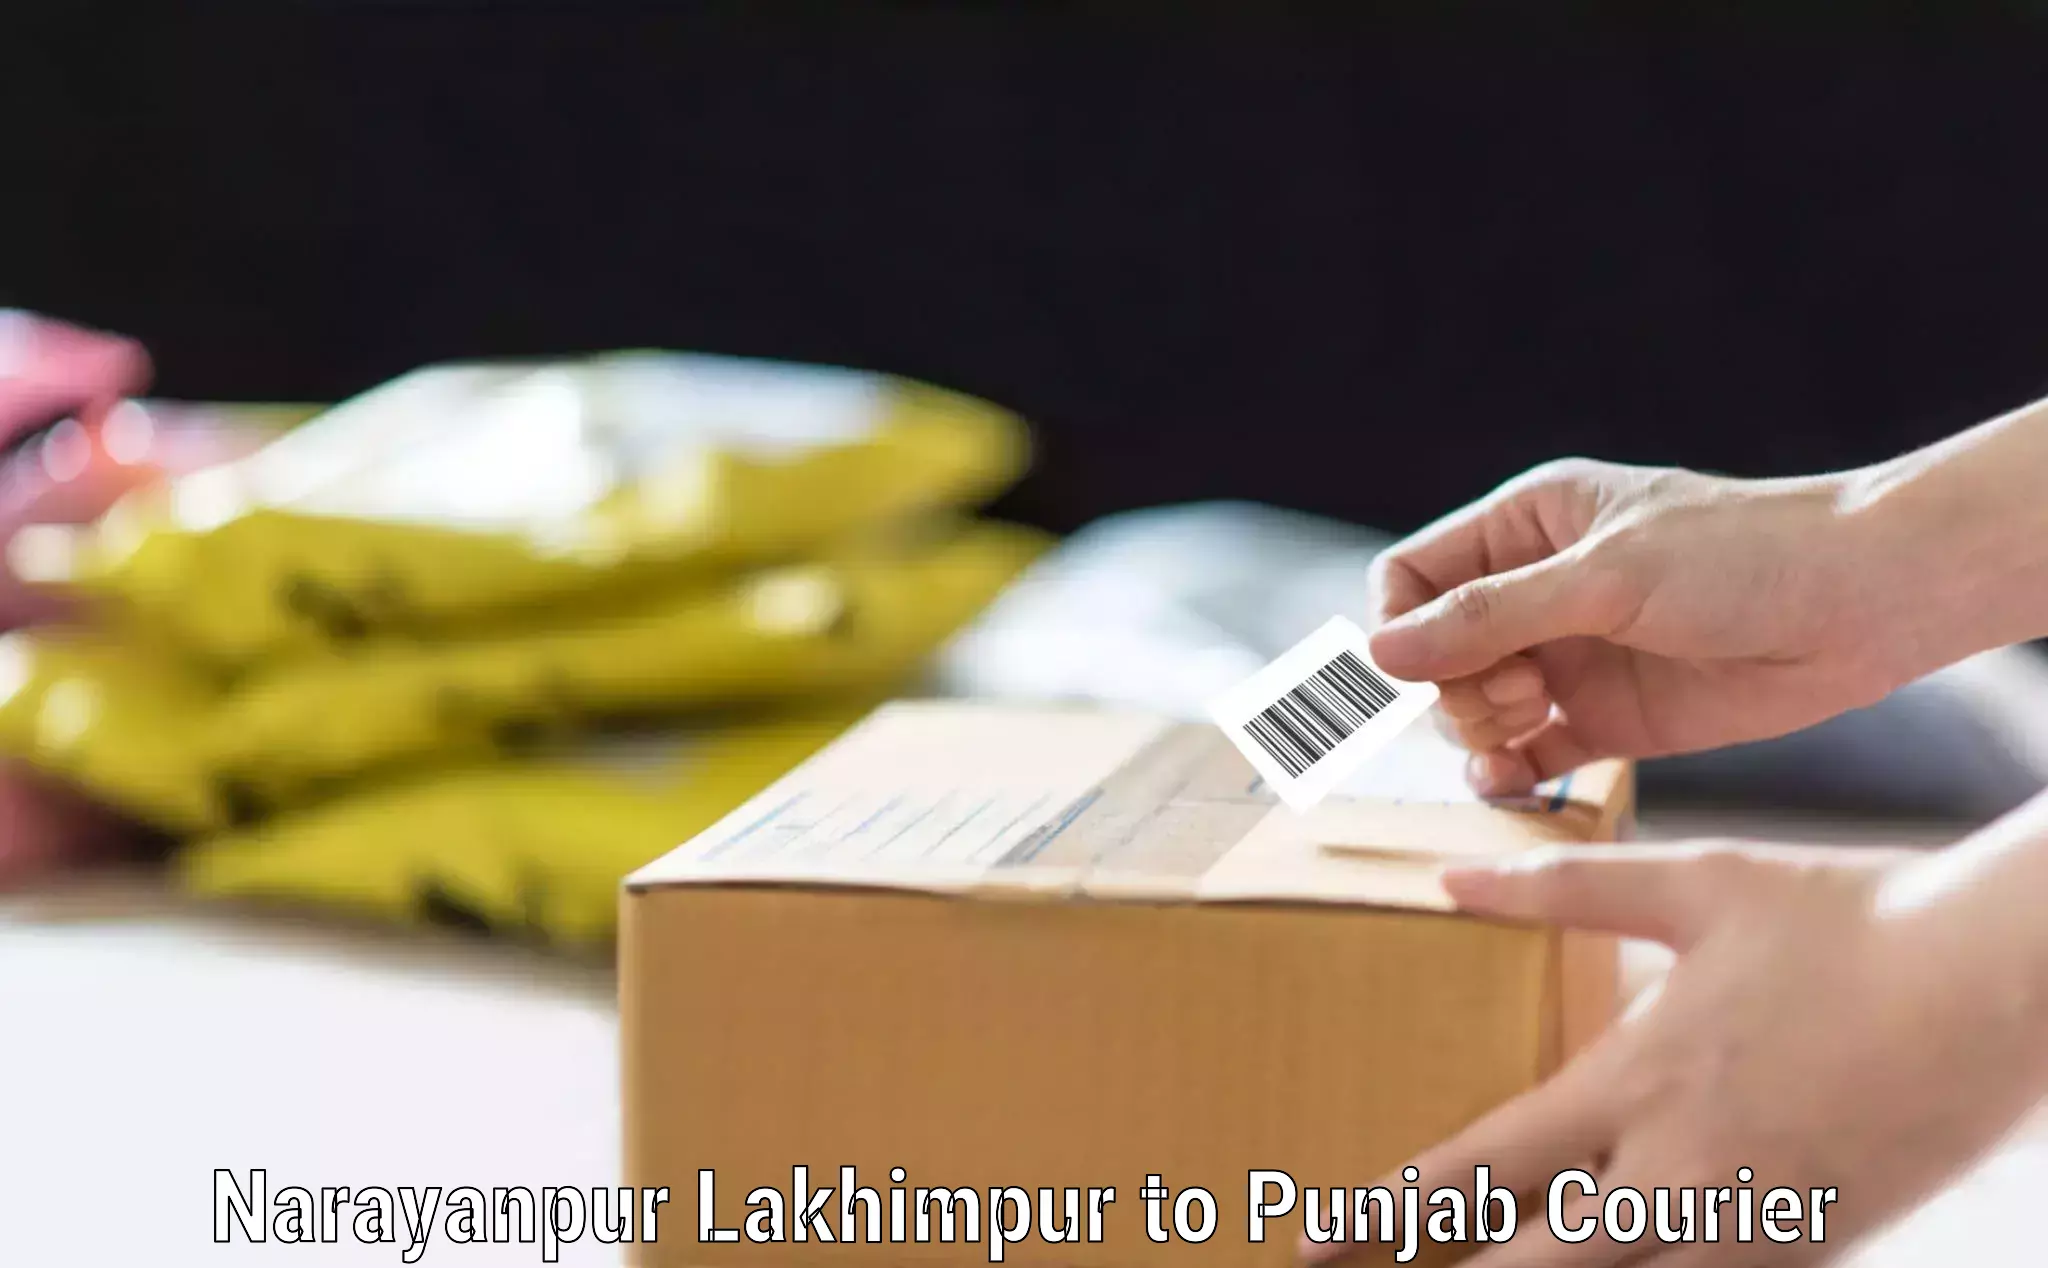 Luggage shipping consultation Narayanpur Lakhimpur to Punjab